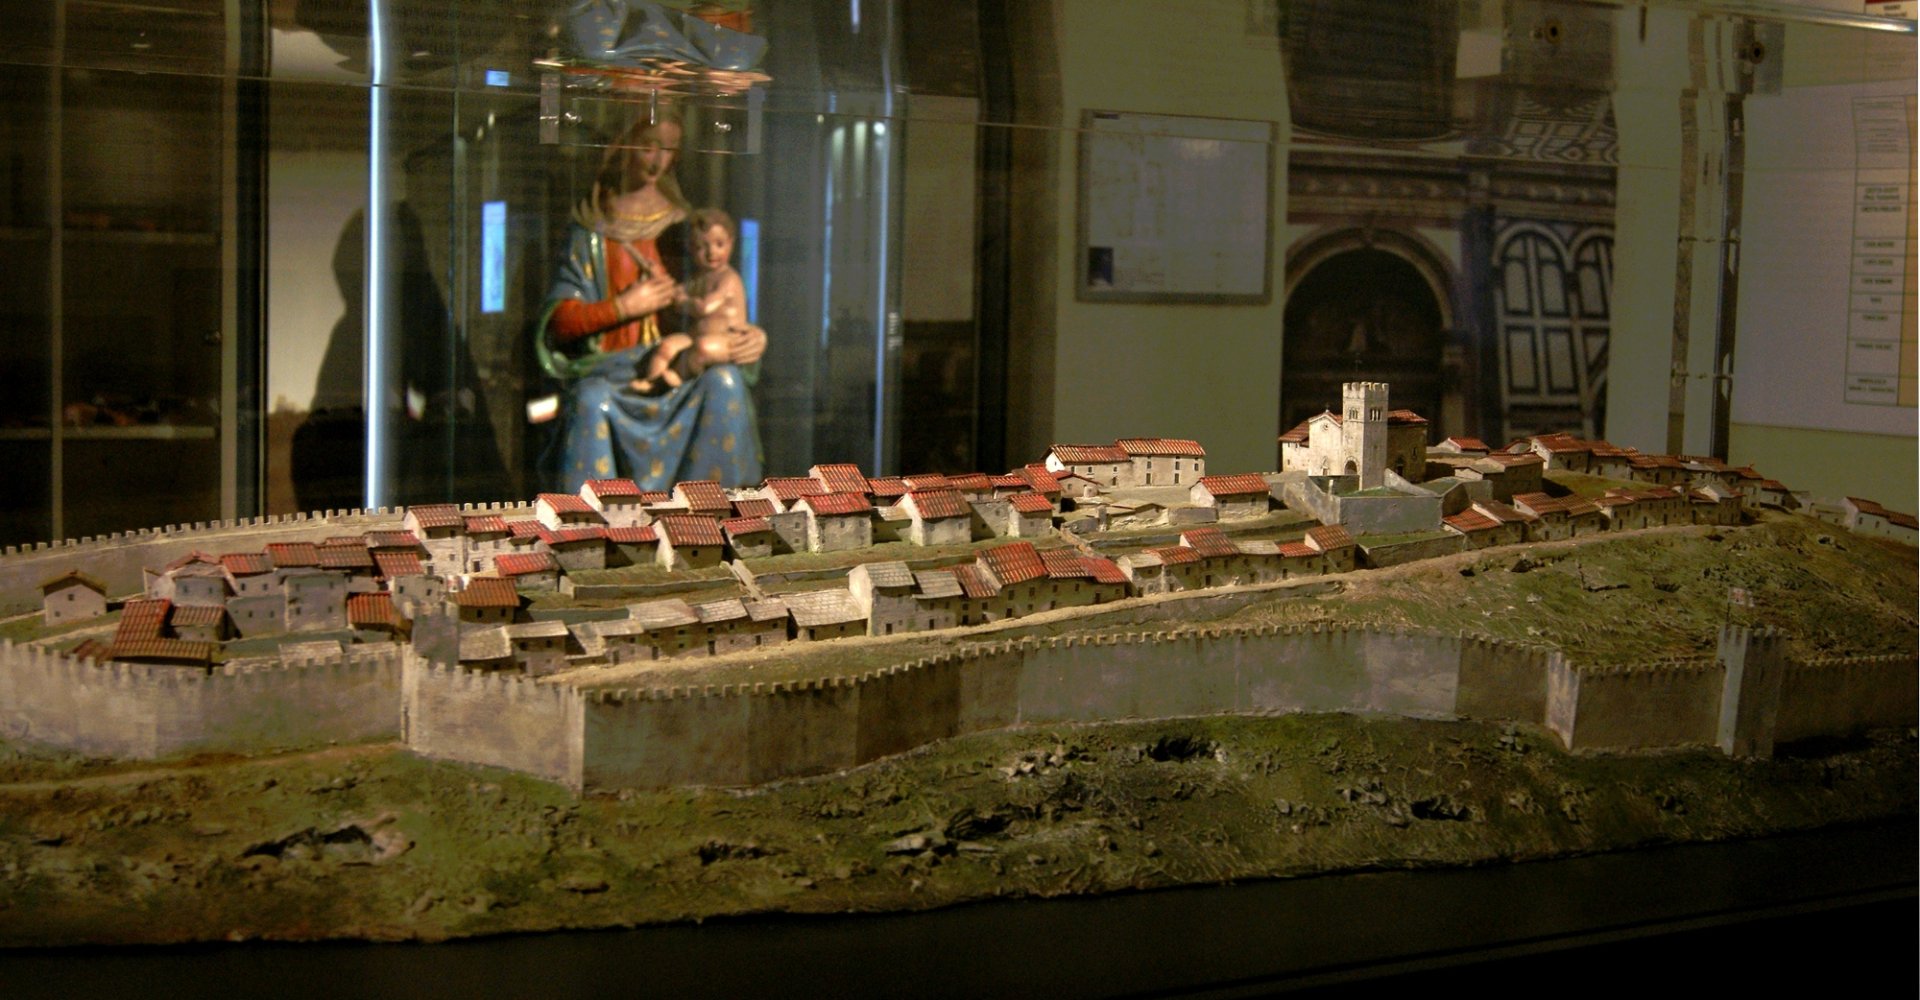 Museo della Città e del Territorio di Monsummano Terme